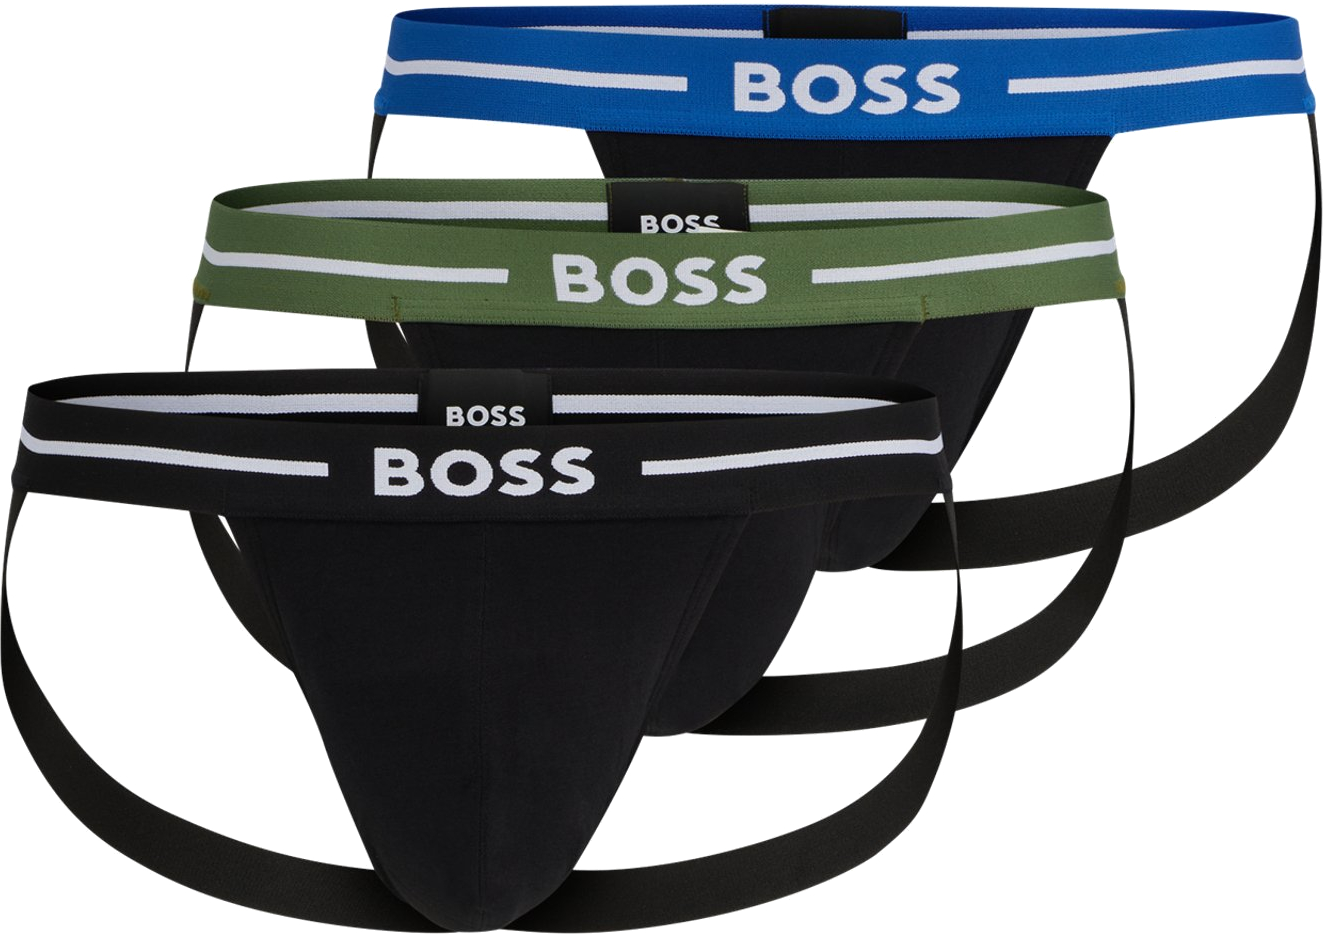 Hugo Boss 3 PACK - pánske slipy BOSS JOCK STRAP 50514965-965 M